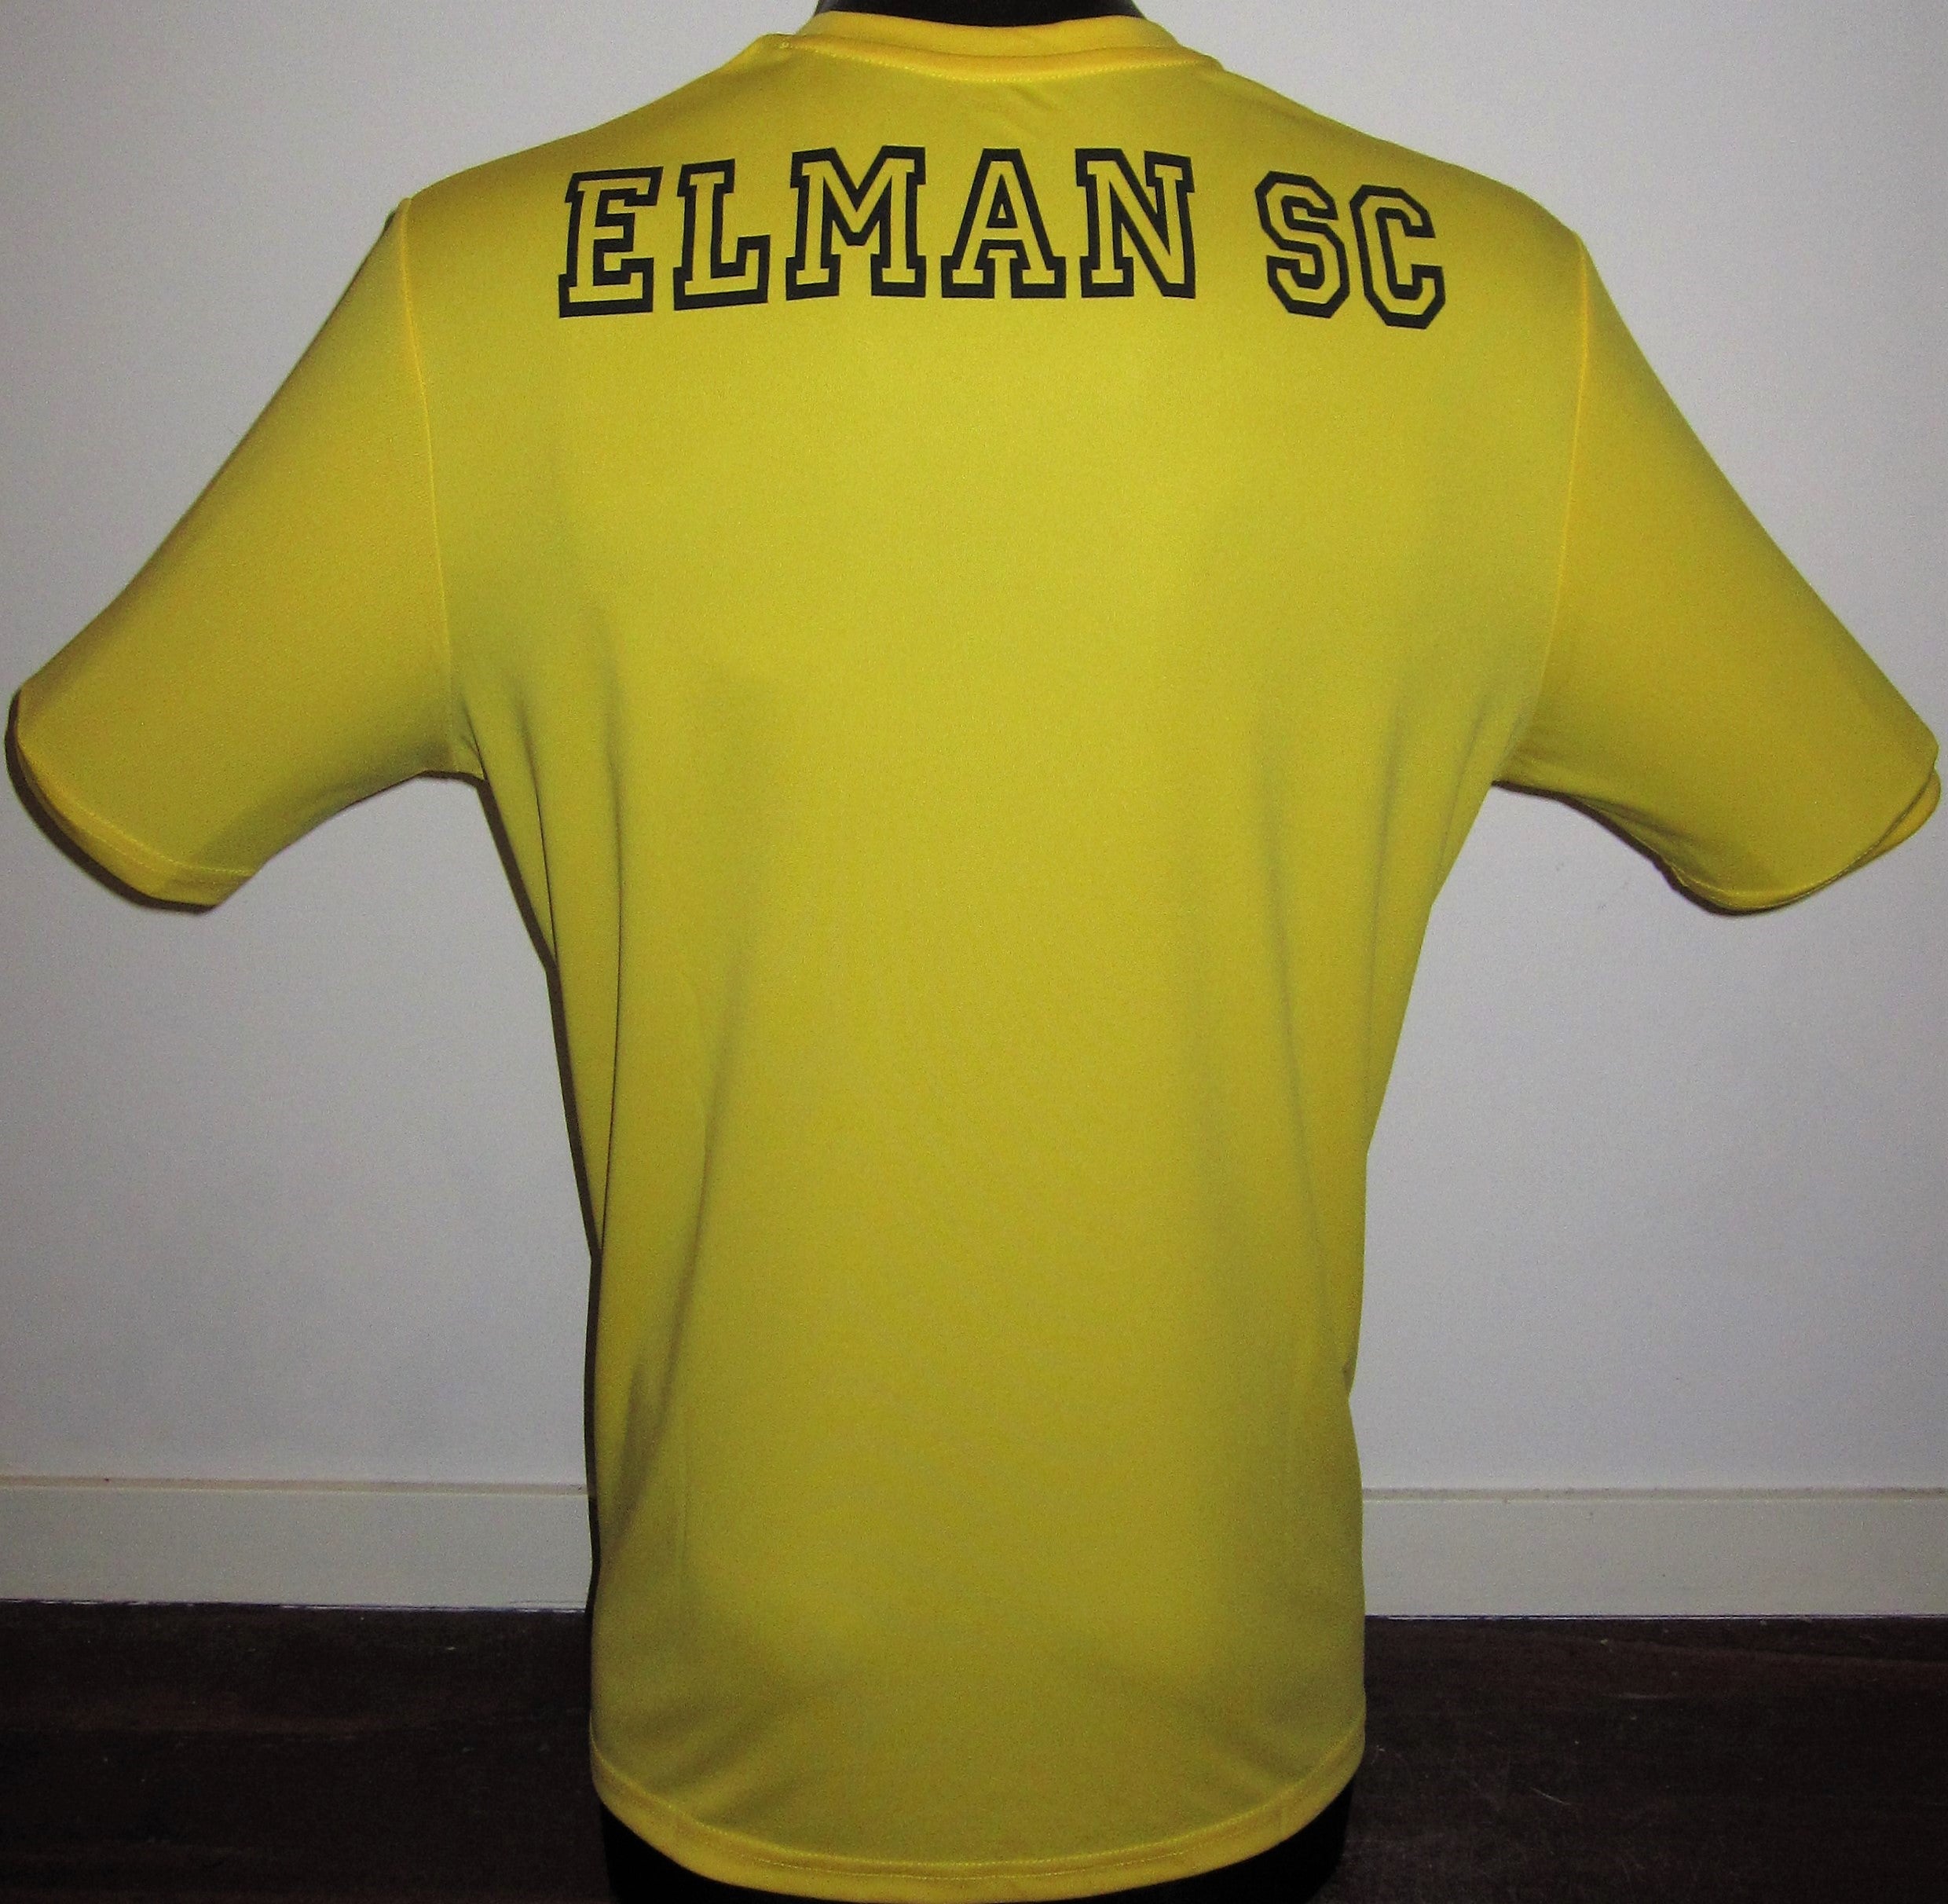 Elman SC 2019-20 Home Jersey/Shirt